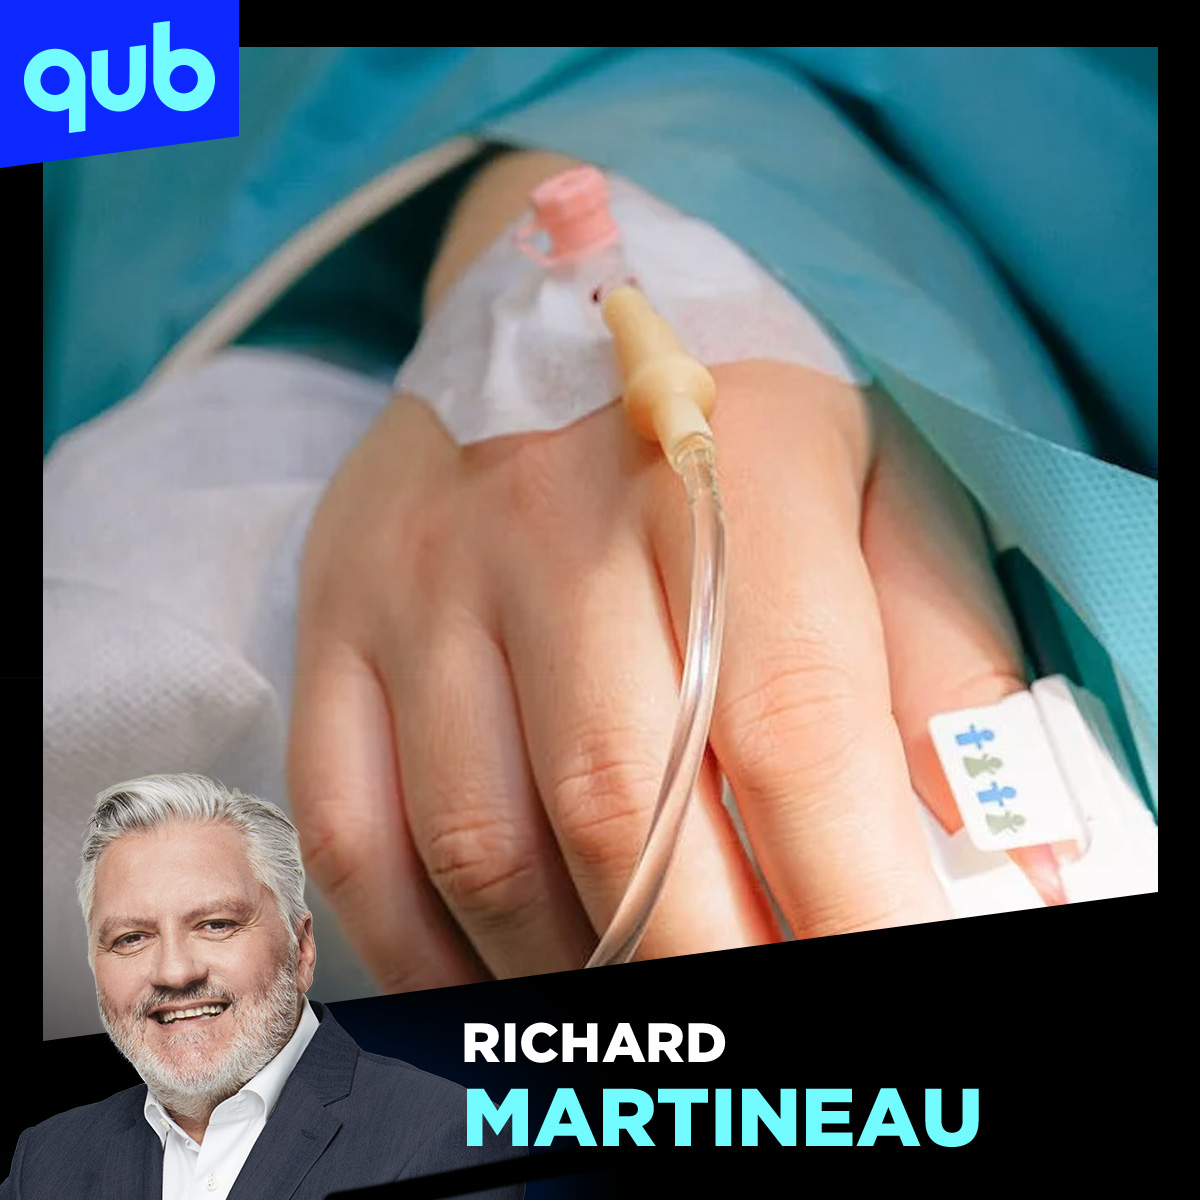 «C’est très dur de pouvoir interner quelqu’un contre son gré», s’indigne Richard Martineau